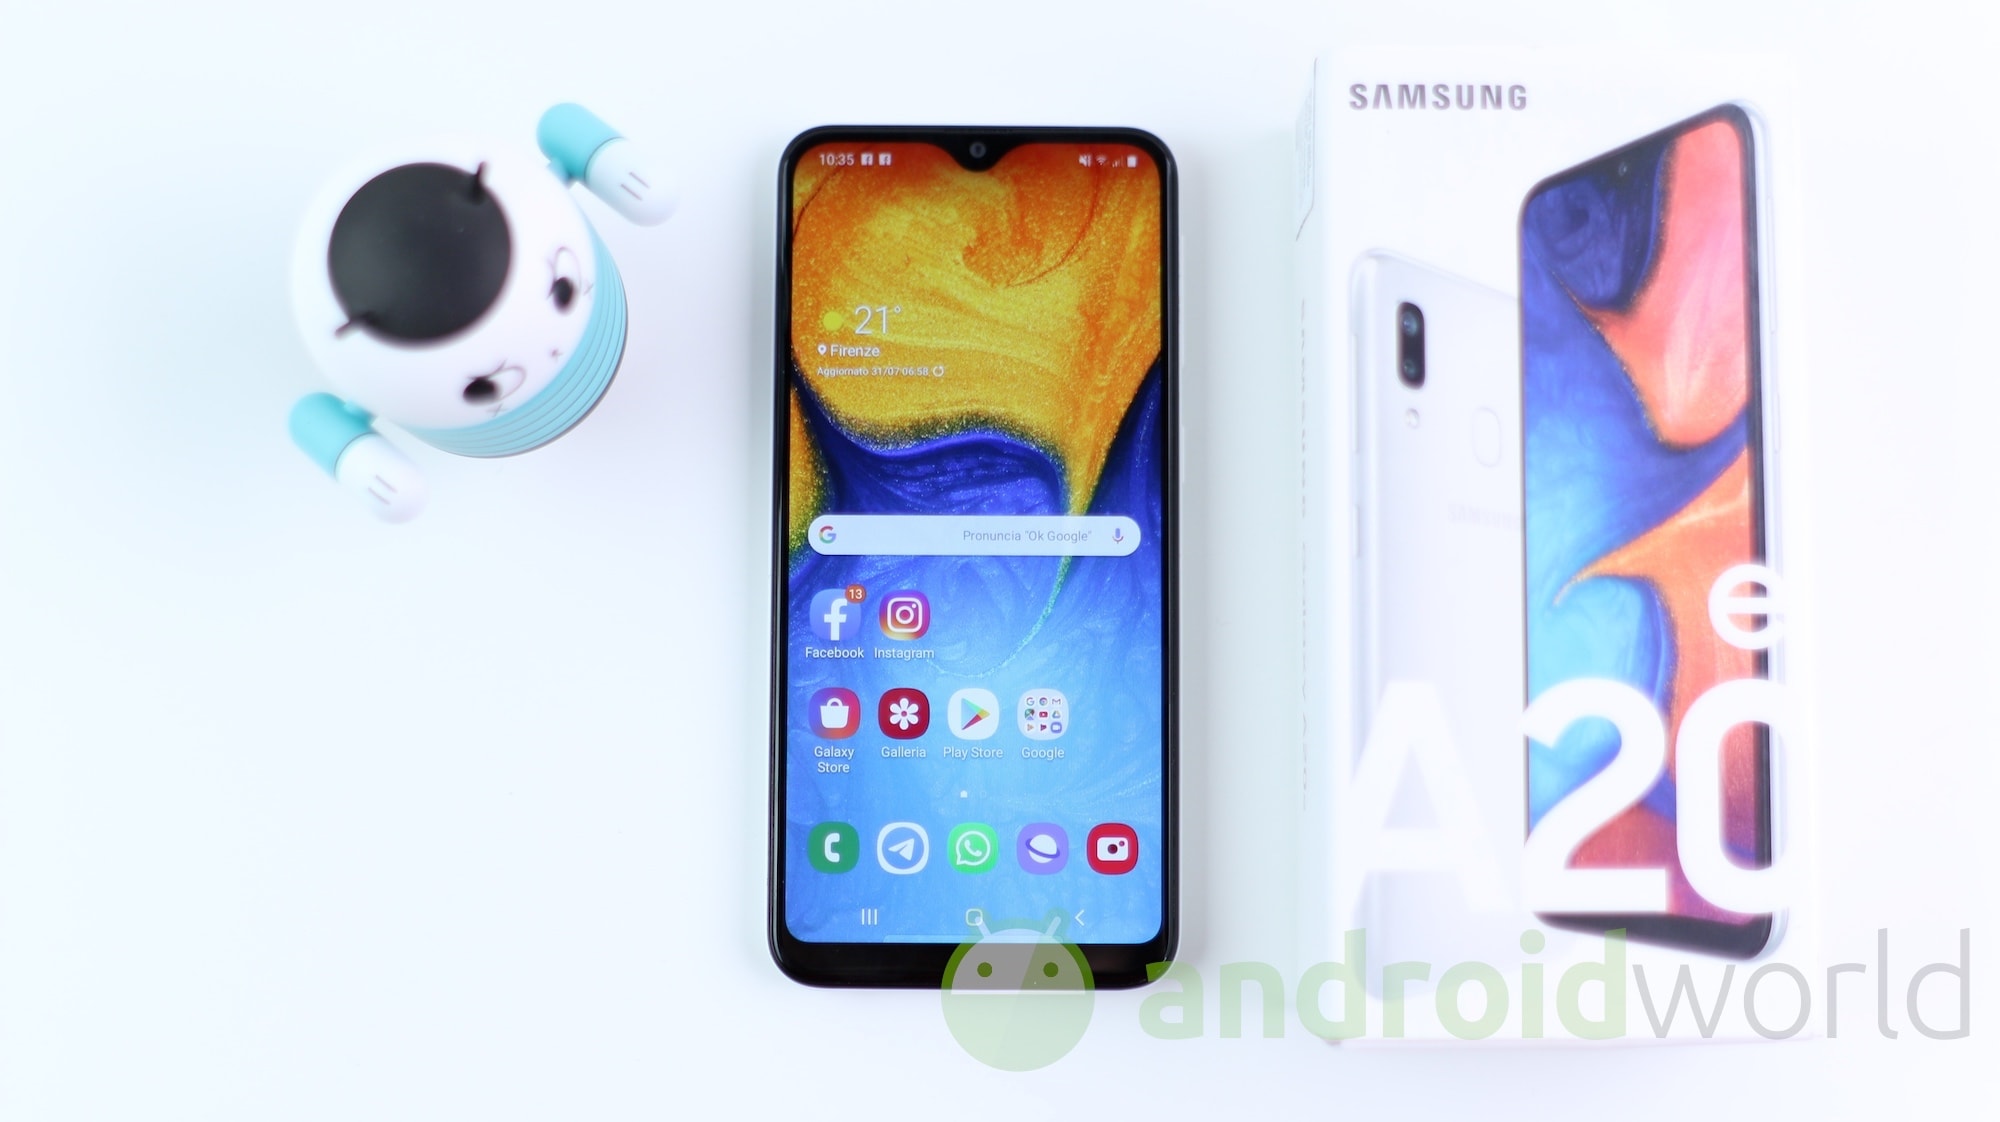 Giorno di aggiornamenti in casa Samsung: nuove patch su Galaxy A20e, A80, S7, S7 Edge e Tab A 10.5 (2018)